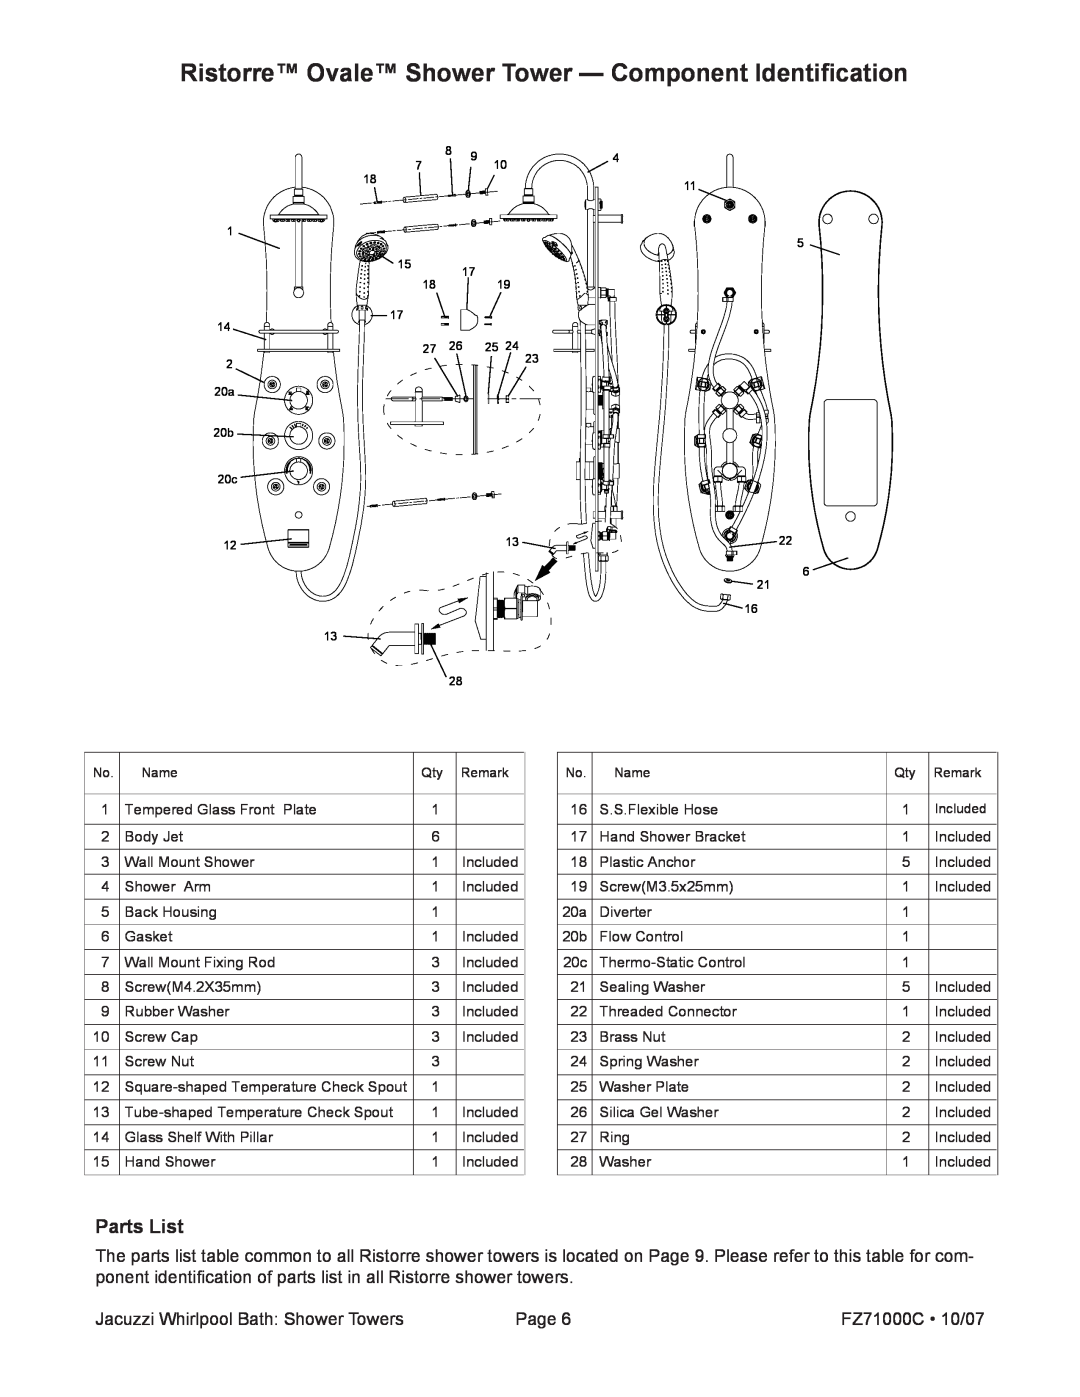 Jacuzzi EC31000, EC30000, EC33000 manual Parts List, Jacuzzi Whirlpool Bath Shower Towers, Page, FZ71000C 10/07 